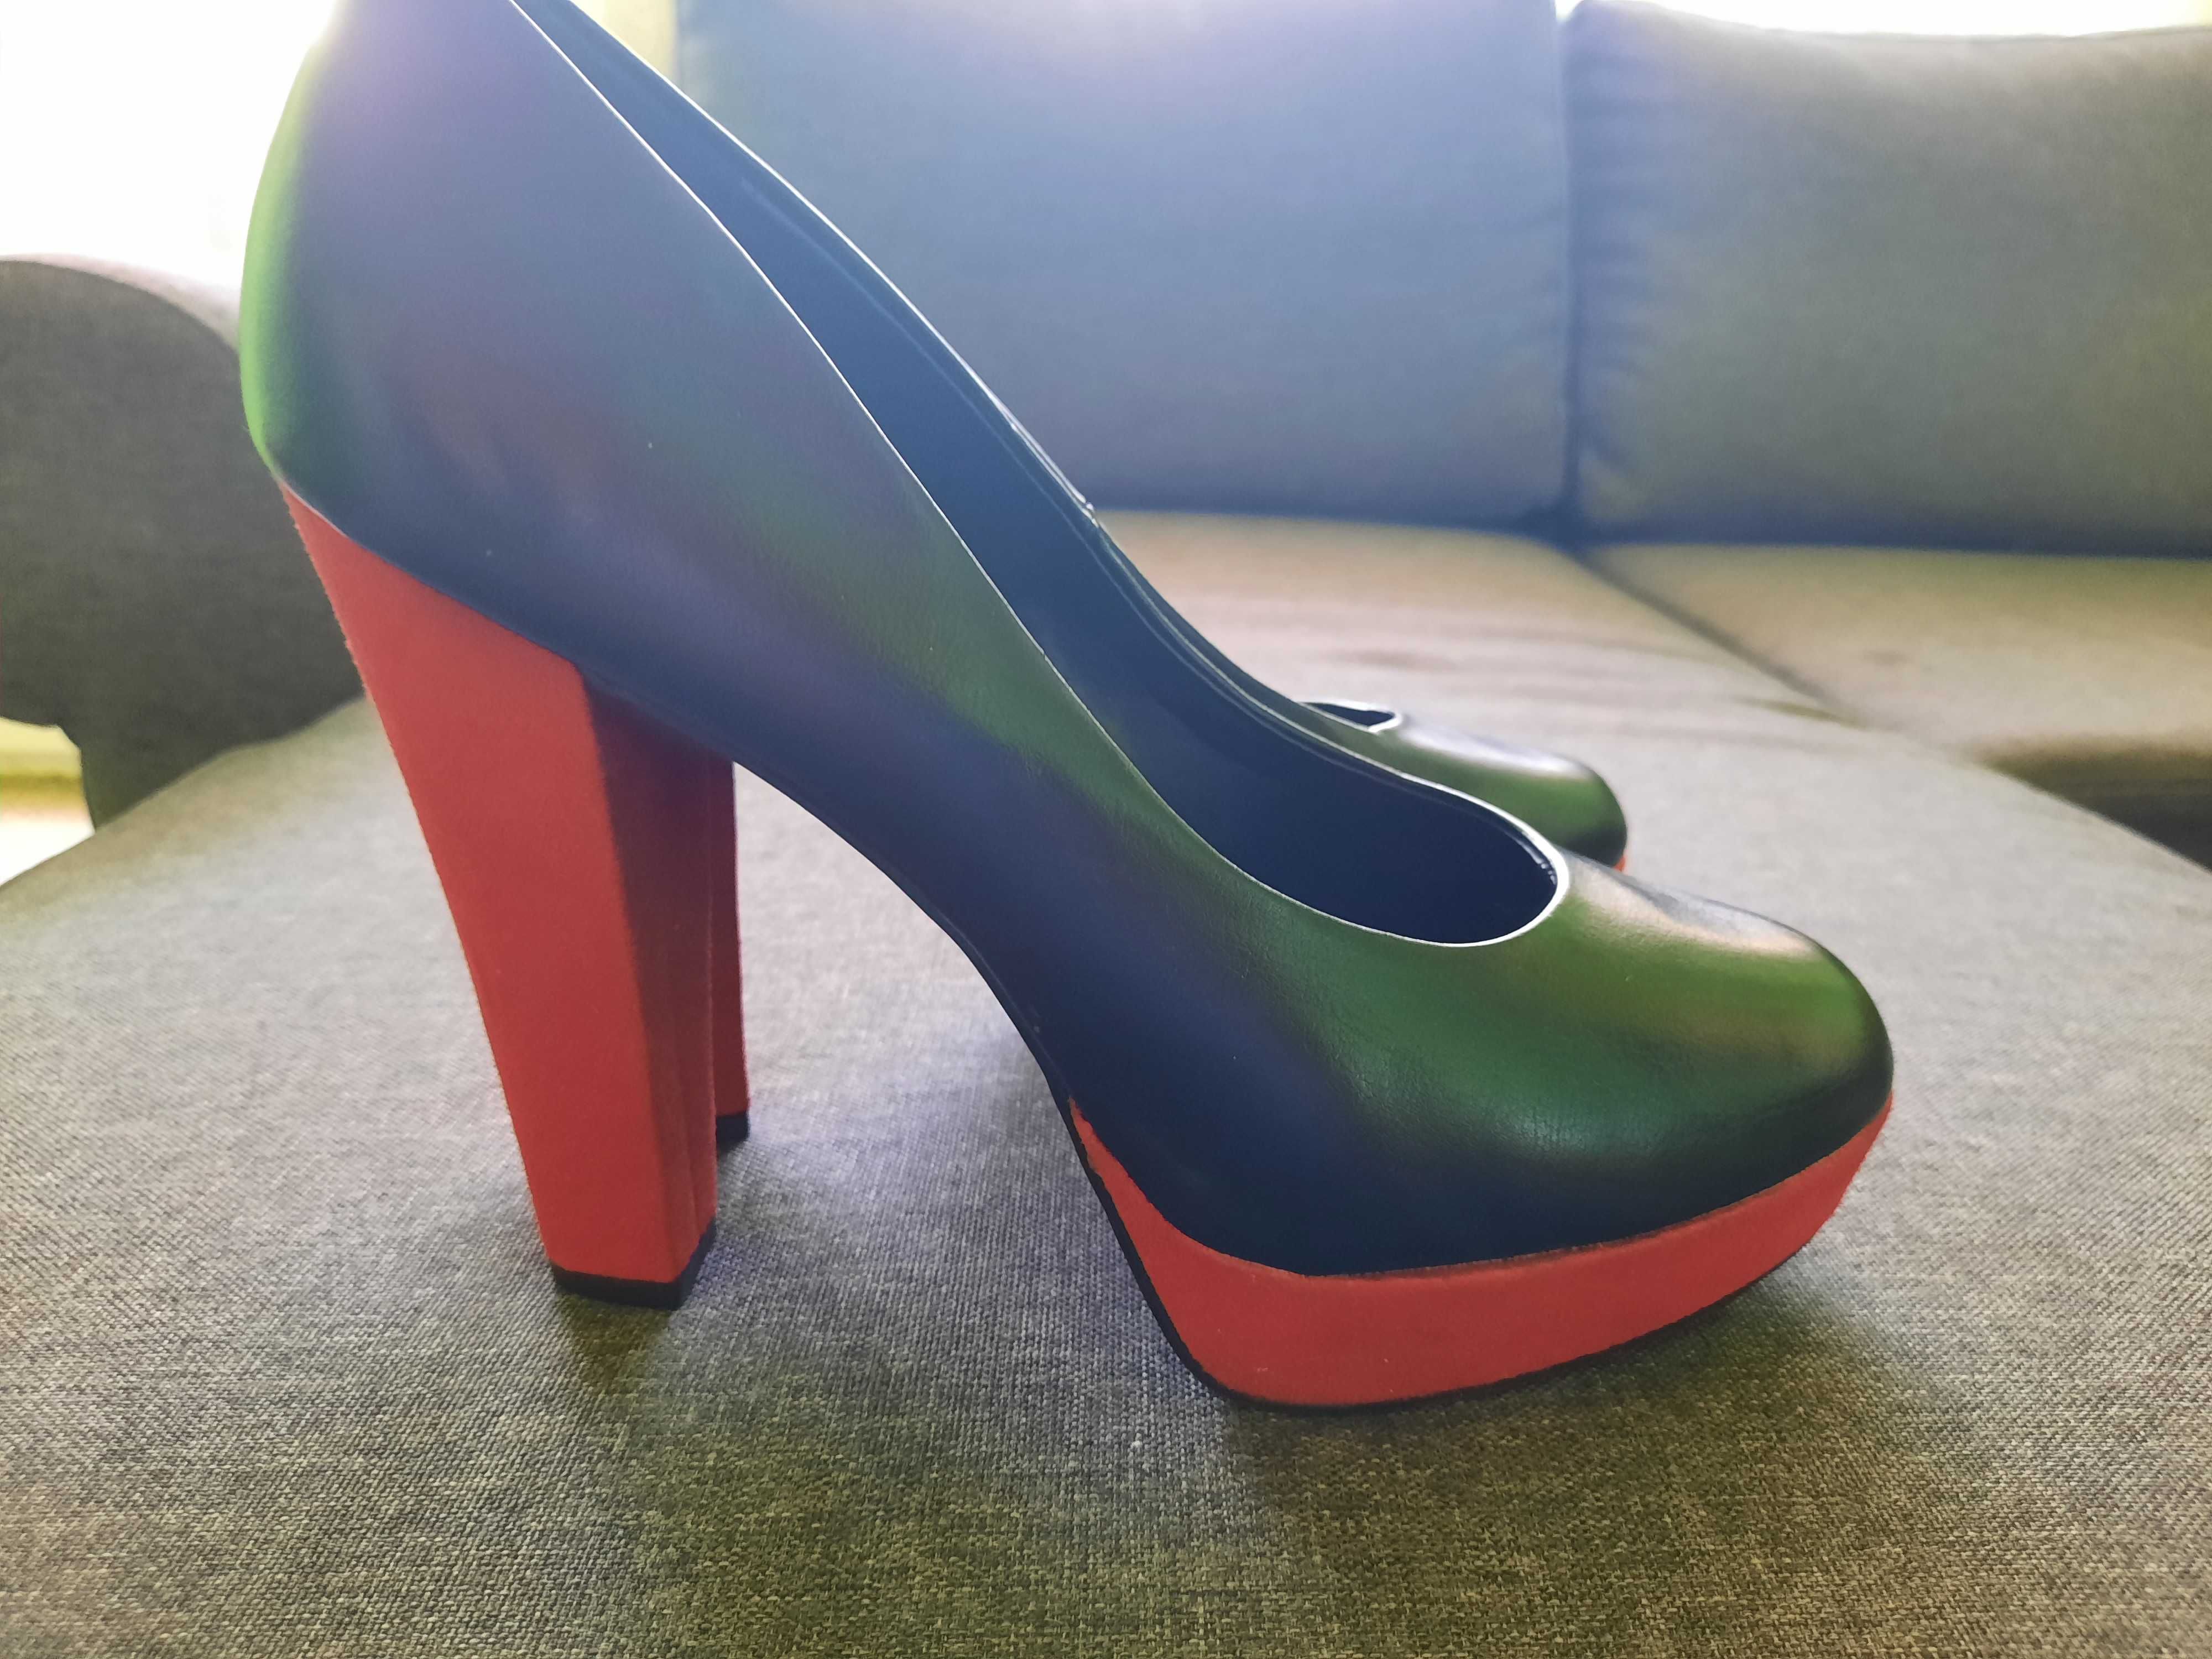 Дамски обувки Graceland